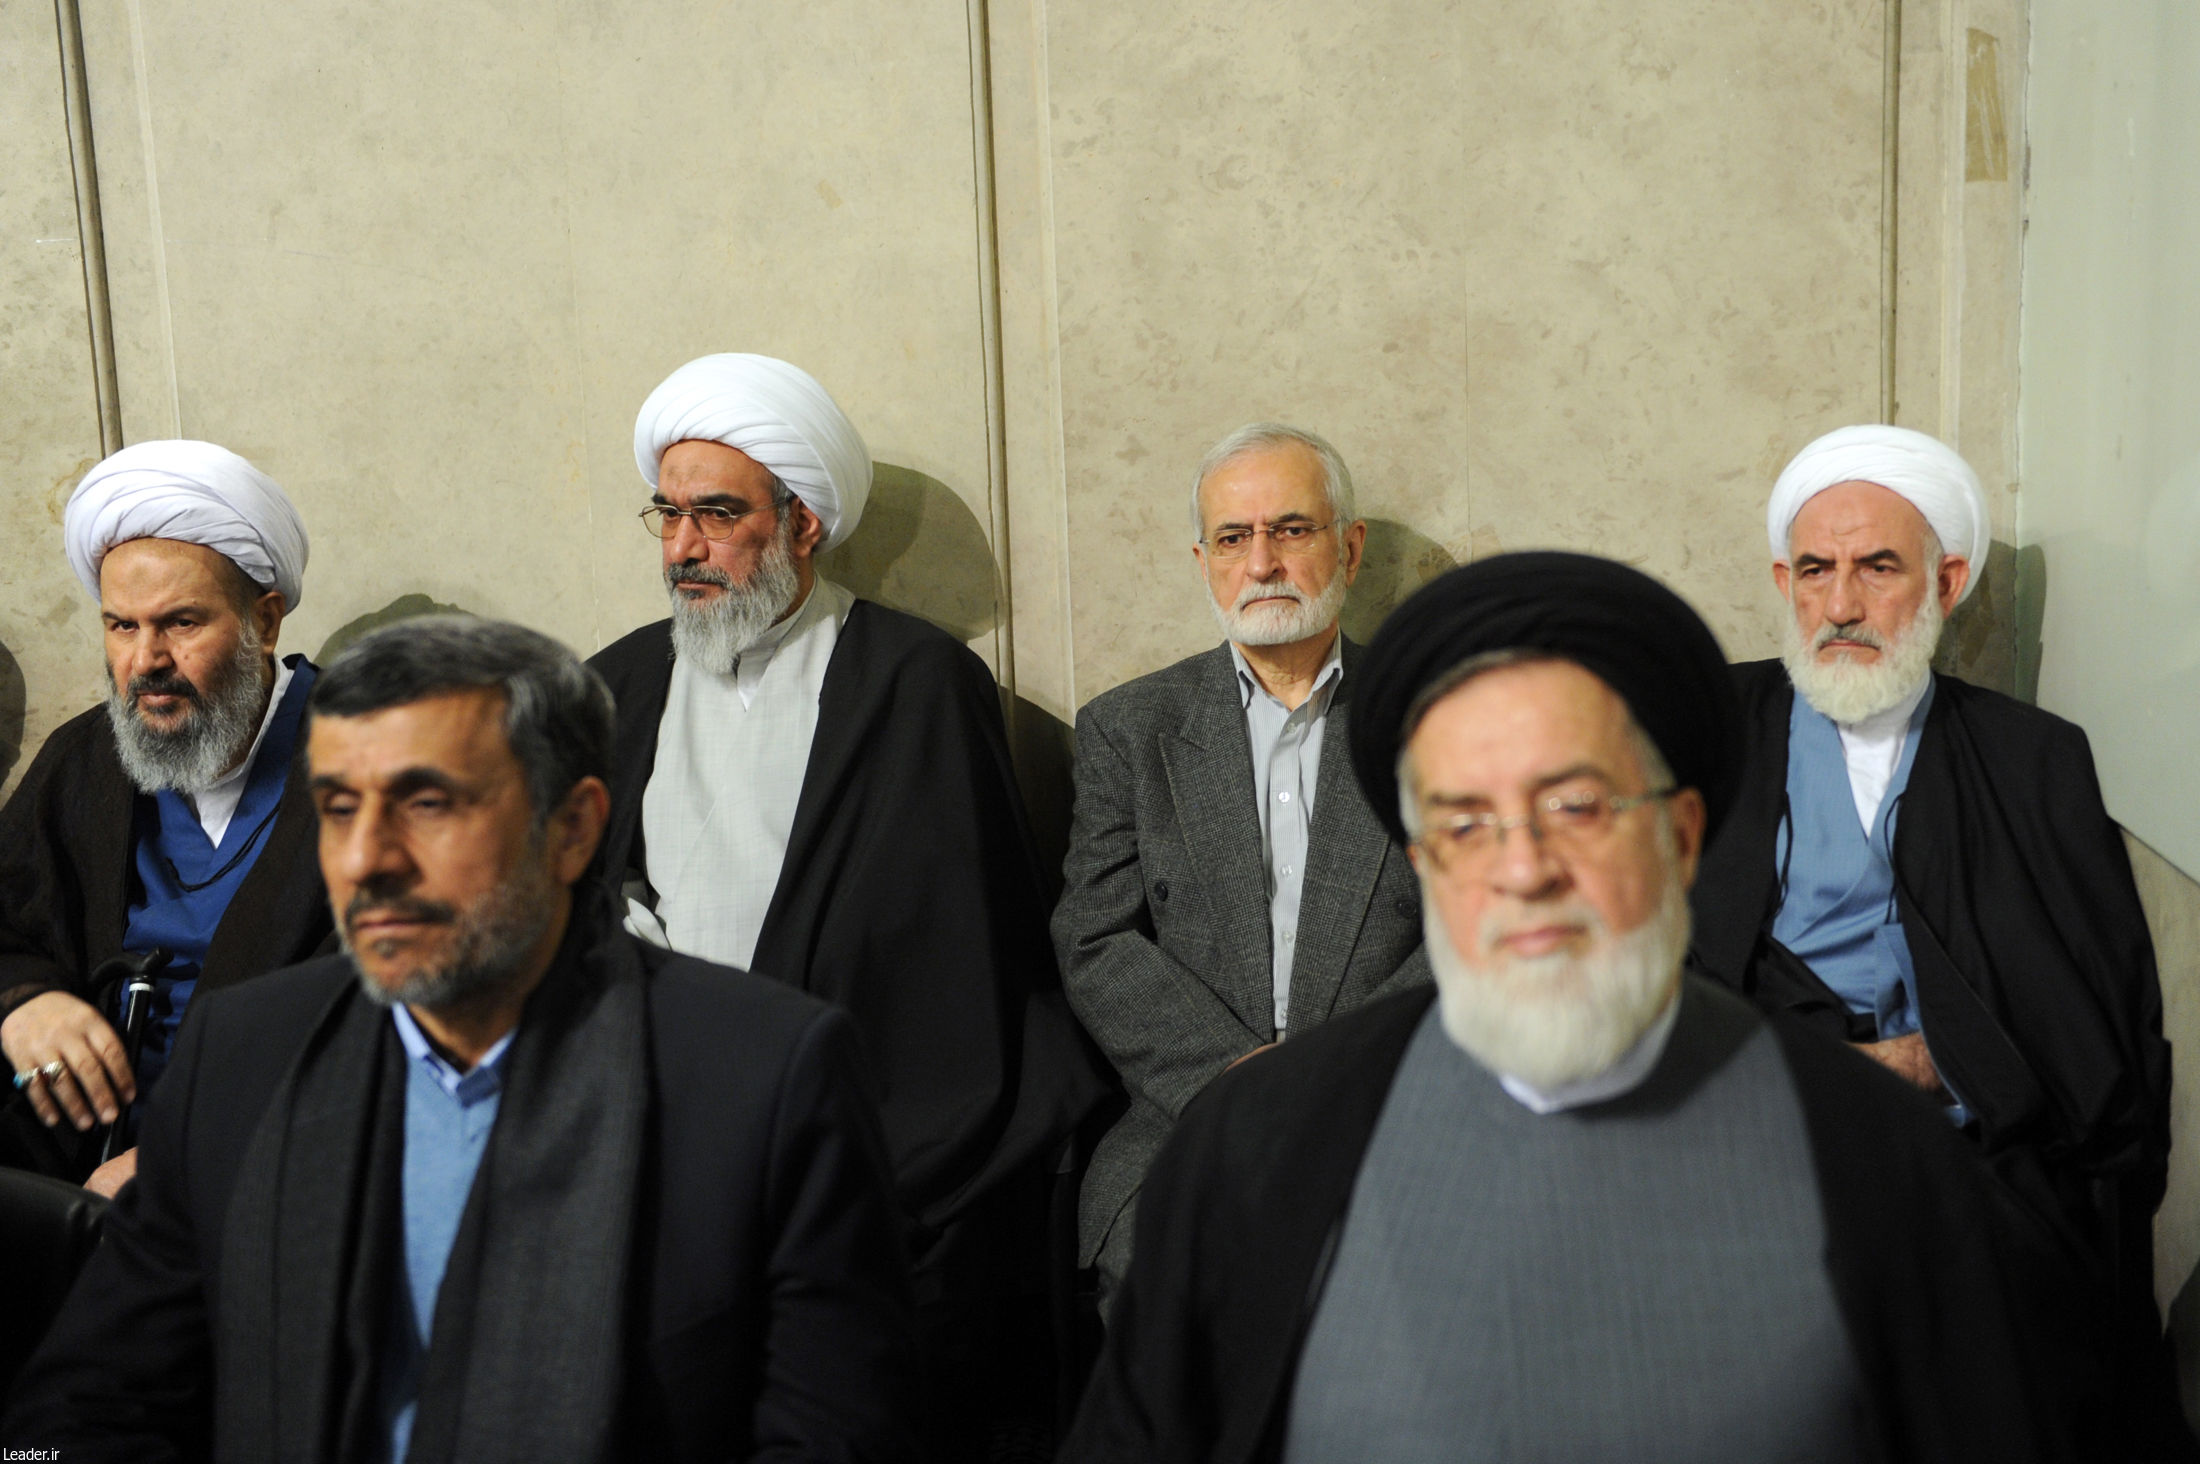 احمدی نژاد در دیدار دیروز مسئولان با رهبری + عکس